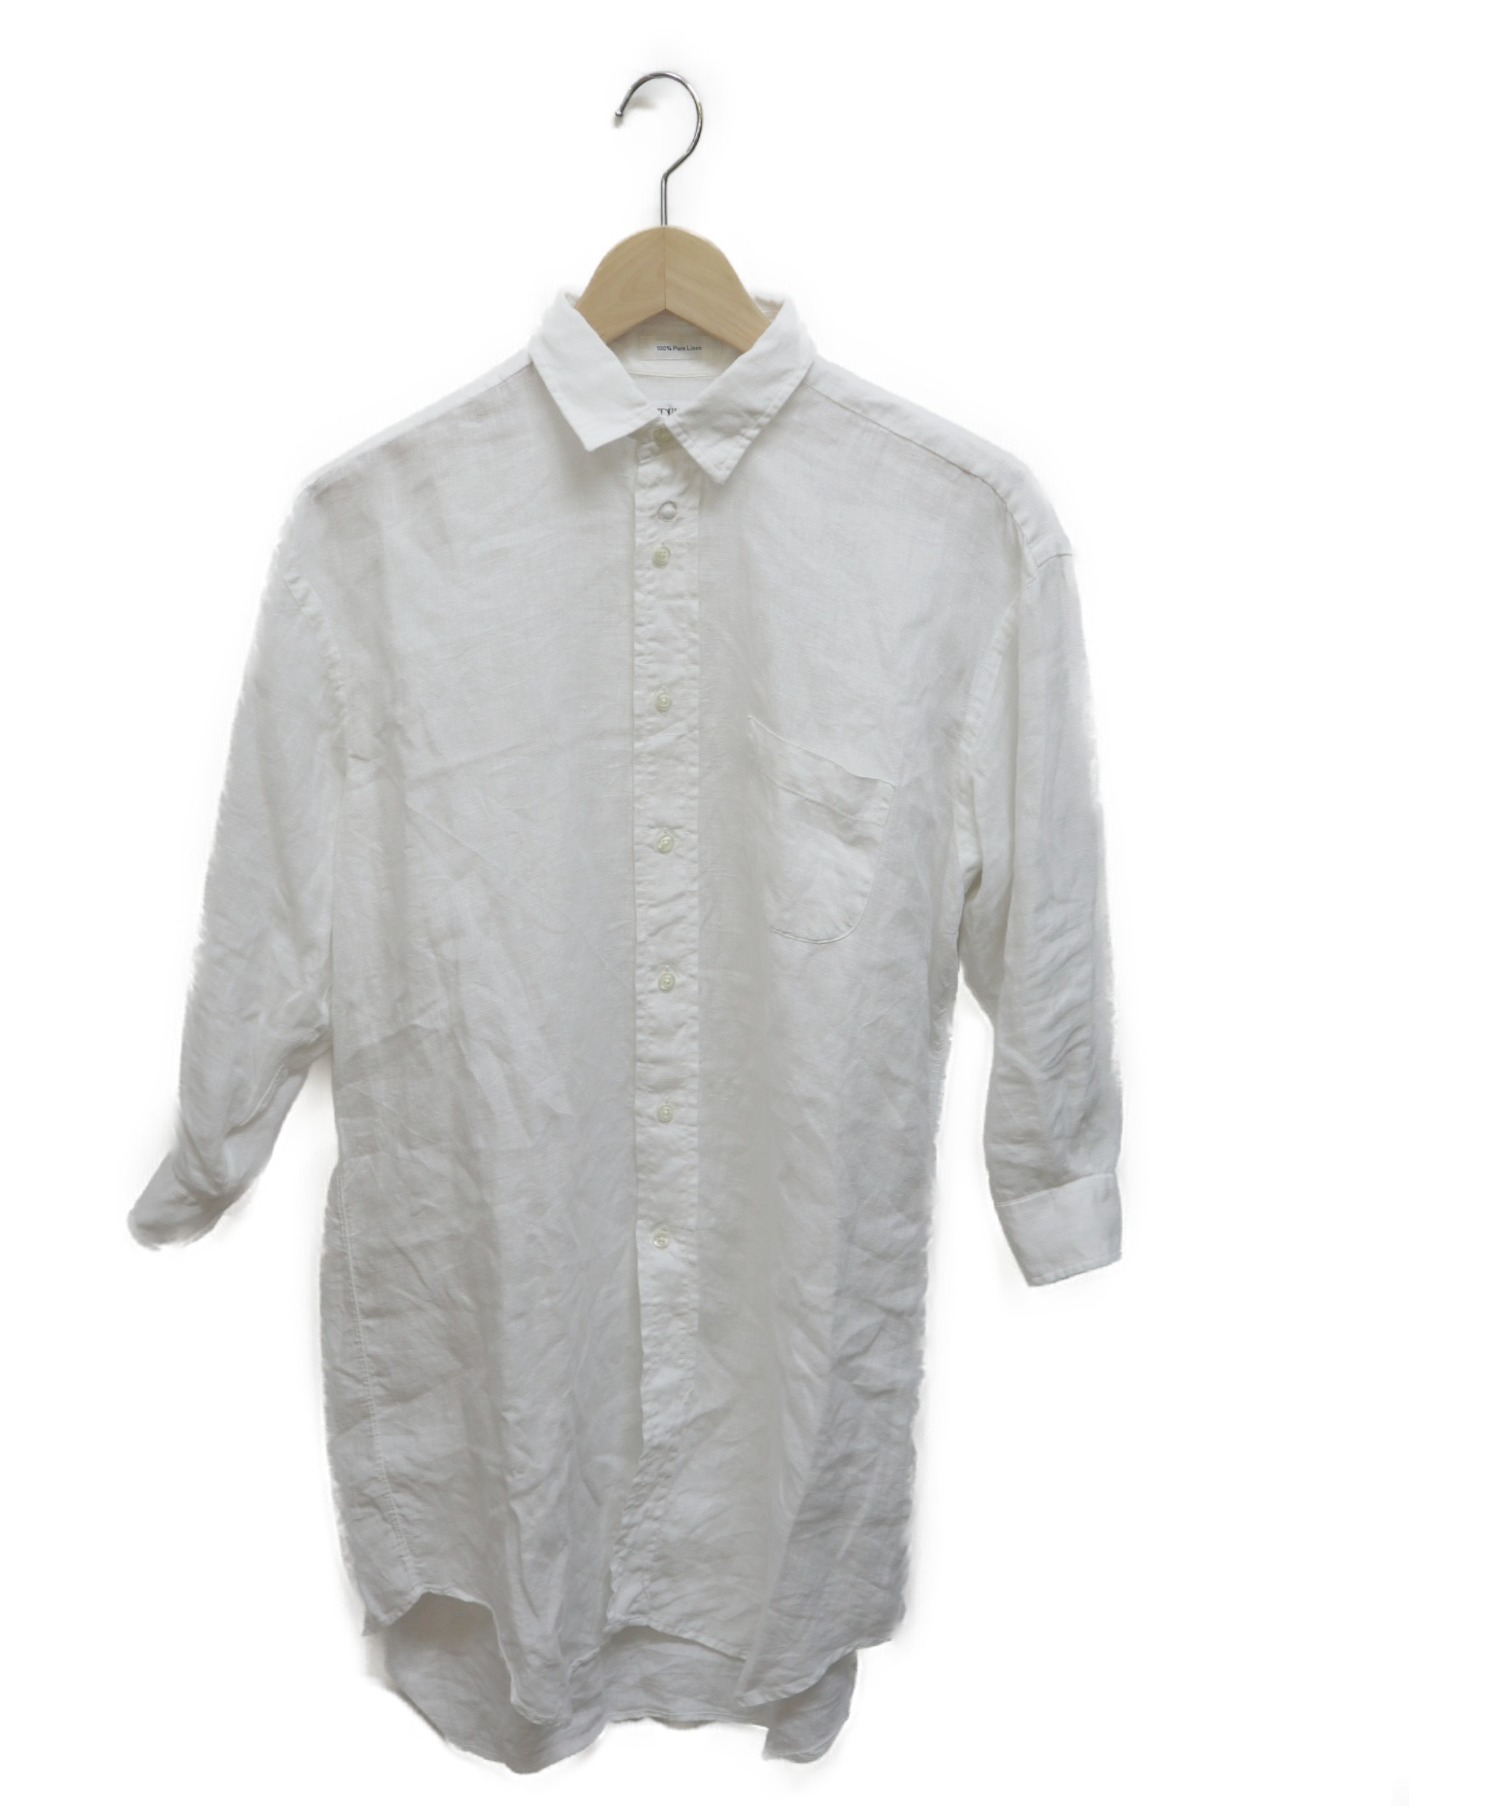 中古 古着通販 Individualized Shirts インディビジュアライズドシャツ リネンロングシャツ ホワイト サイズ Size 14 ブランド 古着通販 トレファク公式 Trefac Fashion